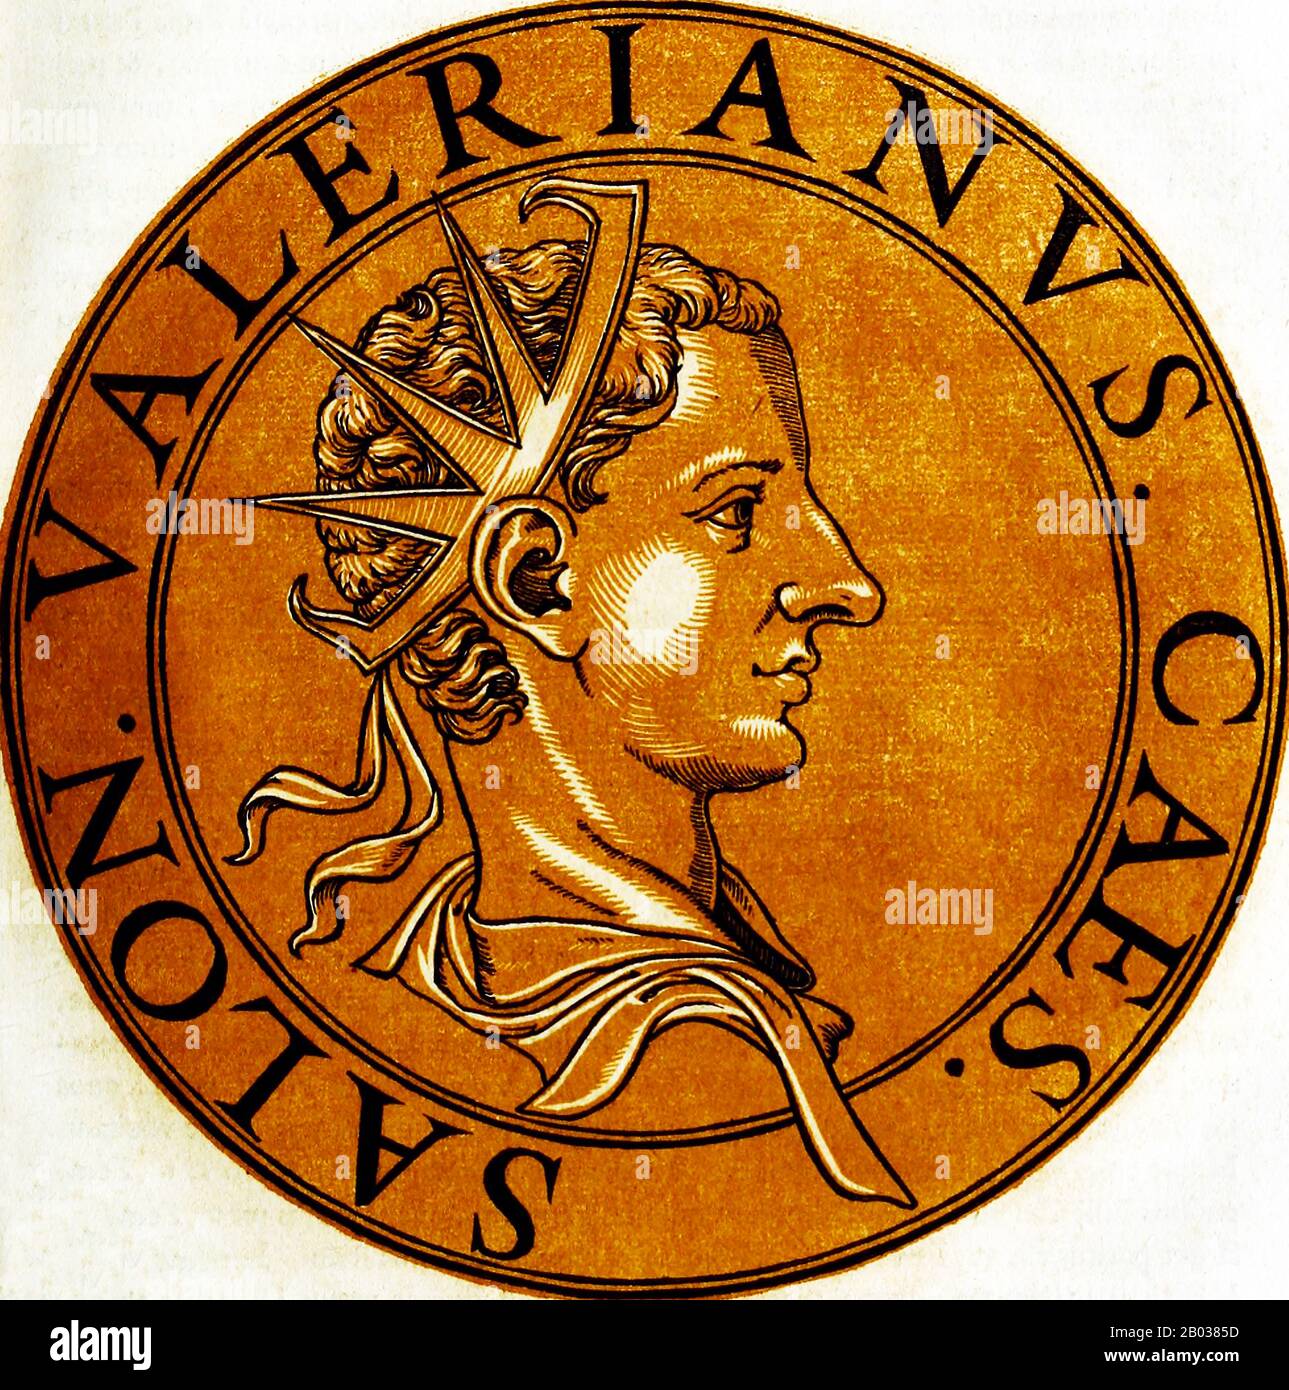 Saloninus (242-260) war der Sohn des Kaiser Gallienus. 258 wurde er zum Cäsar ernannt und nach Gallien geschickt, um die Autorität seines Vaters durchzusetzen, wo er unter den Schutz des Prätorianerpräfekten Silvanus gestellt wurde. Sein Stammsitz in Gaul war Köln. Im Jahr 260 ordnete Saloninus an, General Postumus die gesamte Kriegsbeute zu übergeben, die seine Truppen im Kampf beschlagnahmt hatten, und forderte, sie stattdessen auf sein gut zu schicken. Postumus Truppen nahmen Ausnahme und erhoben sich gegen das Römische Reich, erklärten Postumus zu ihrem Kaiser, töteten sowohl Saloninus als auch Silvanus und setzten das sogenannte Gallische Reich ein. Stockfoto